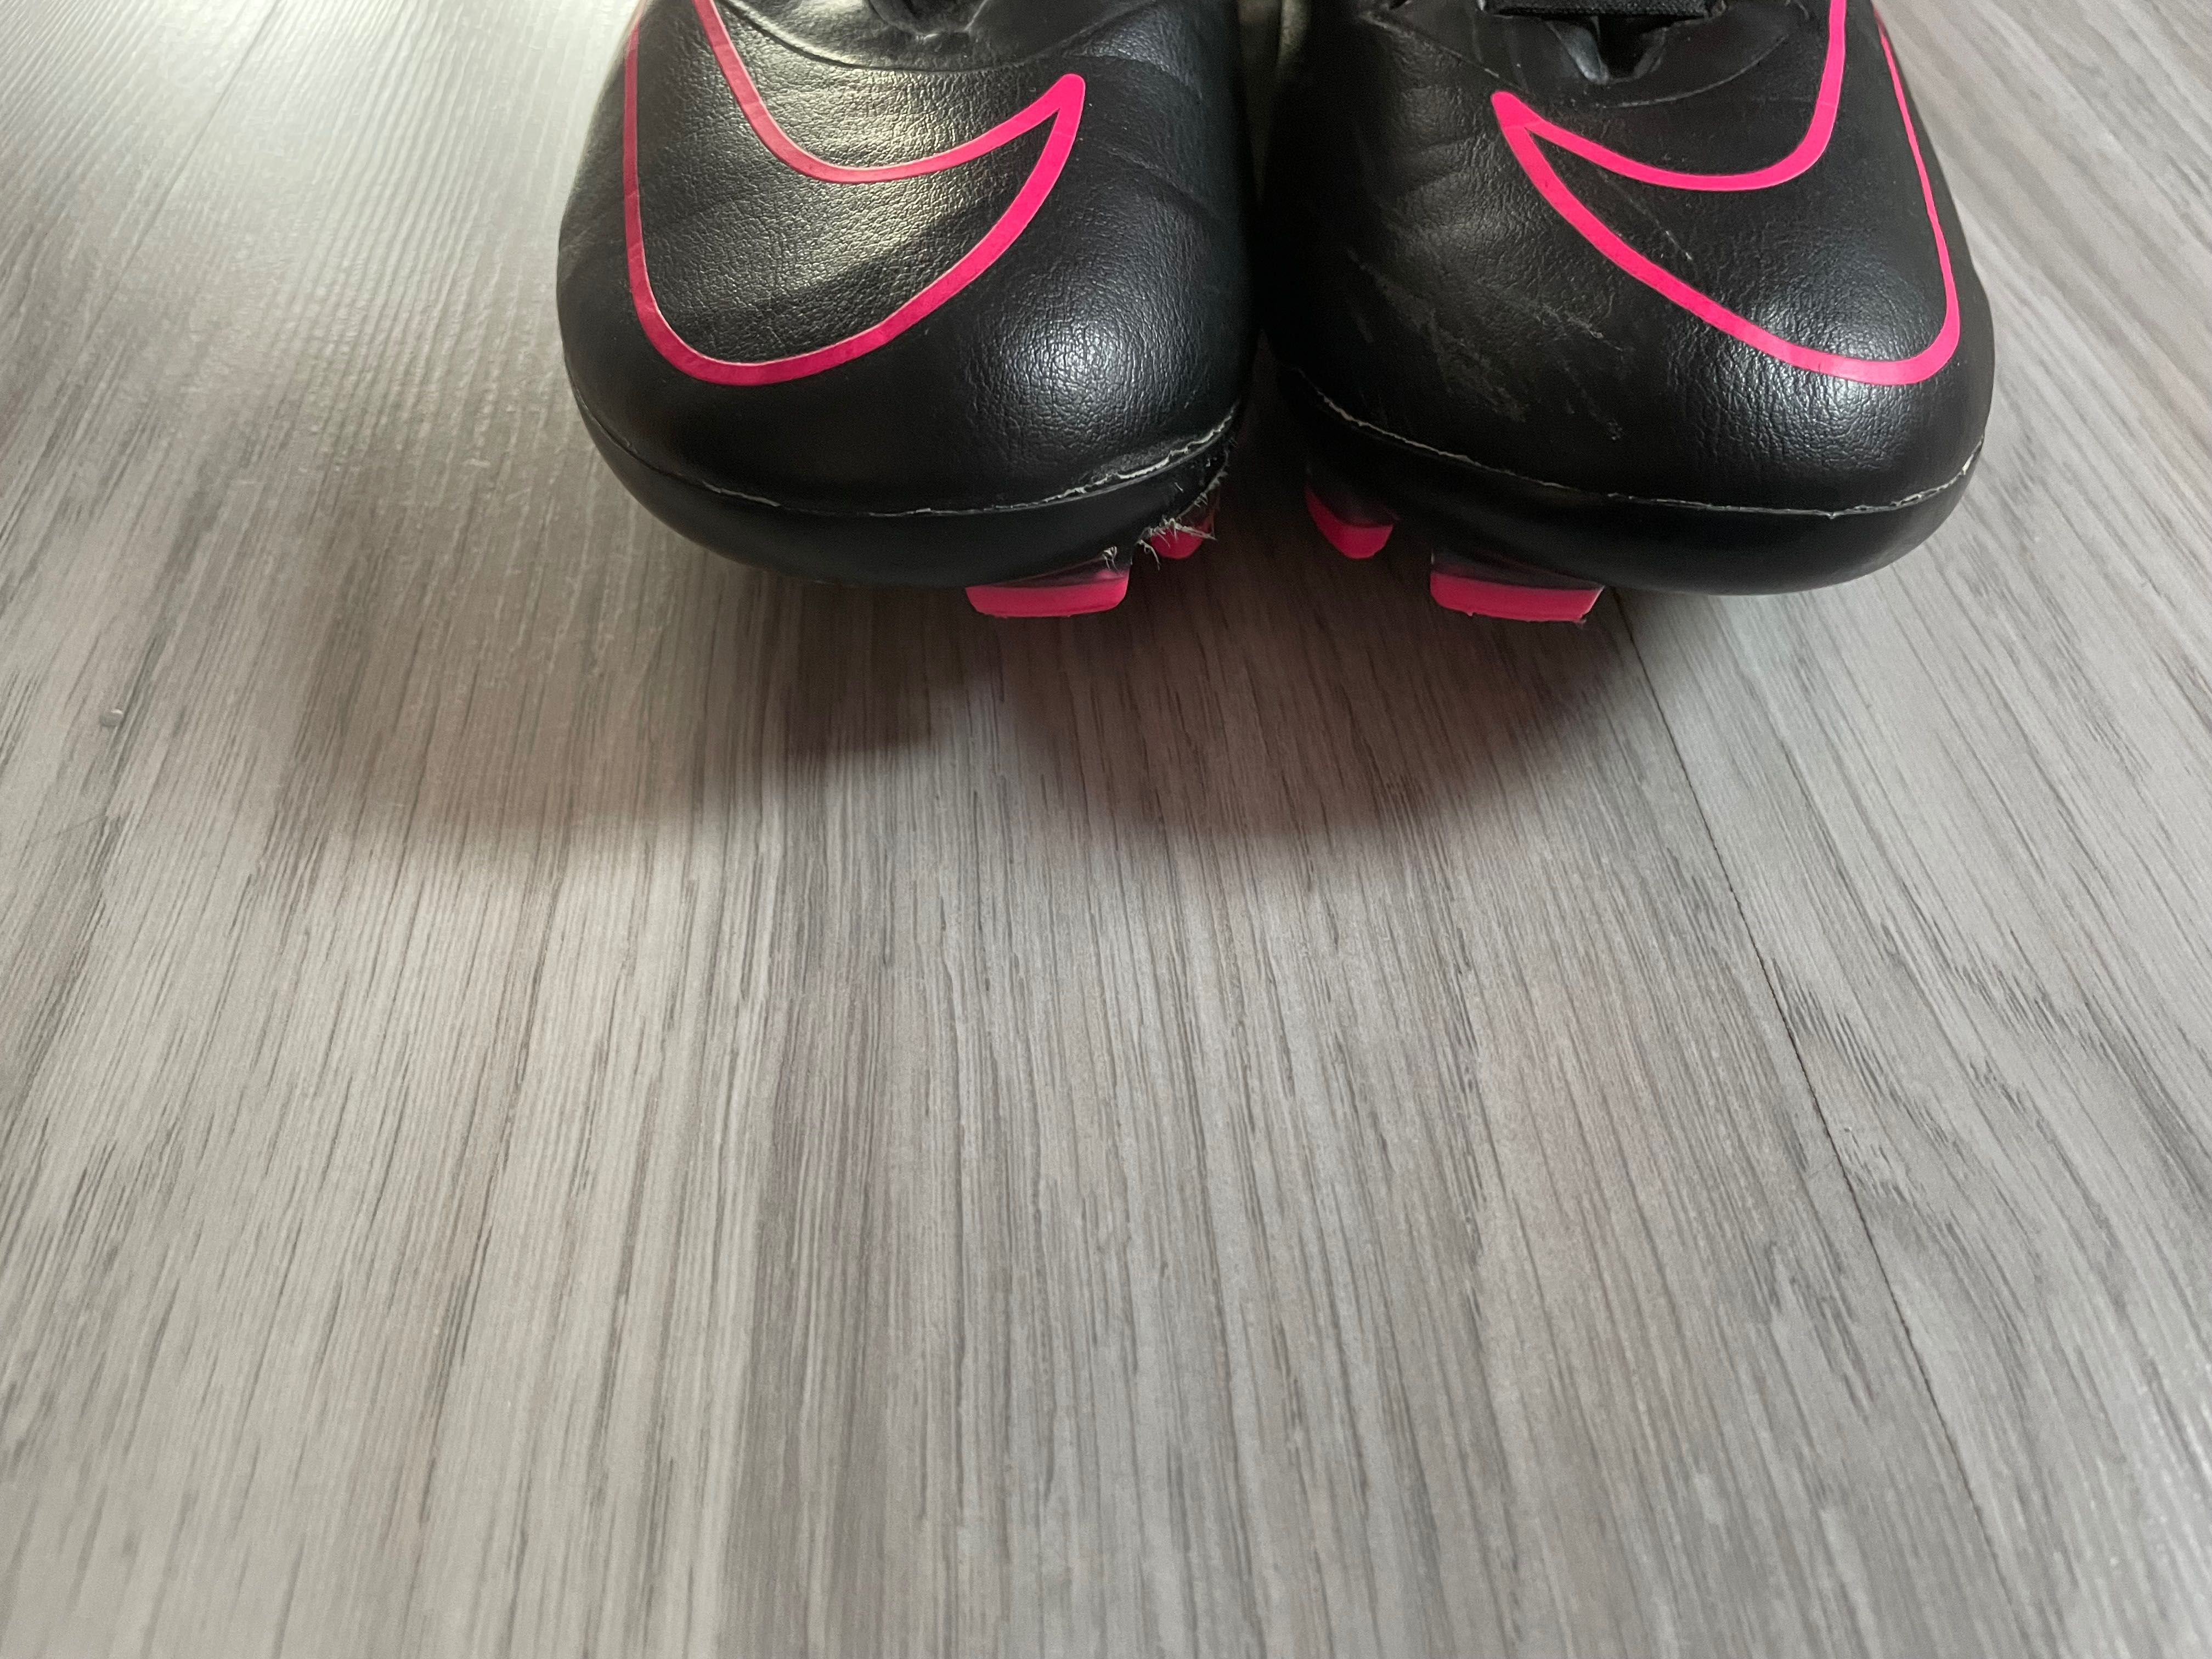 Korki Nike Mercurial Vapor X profesjonalne profy rozmiar 37,5 różowe